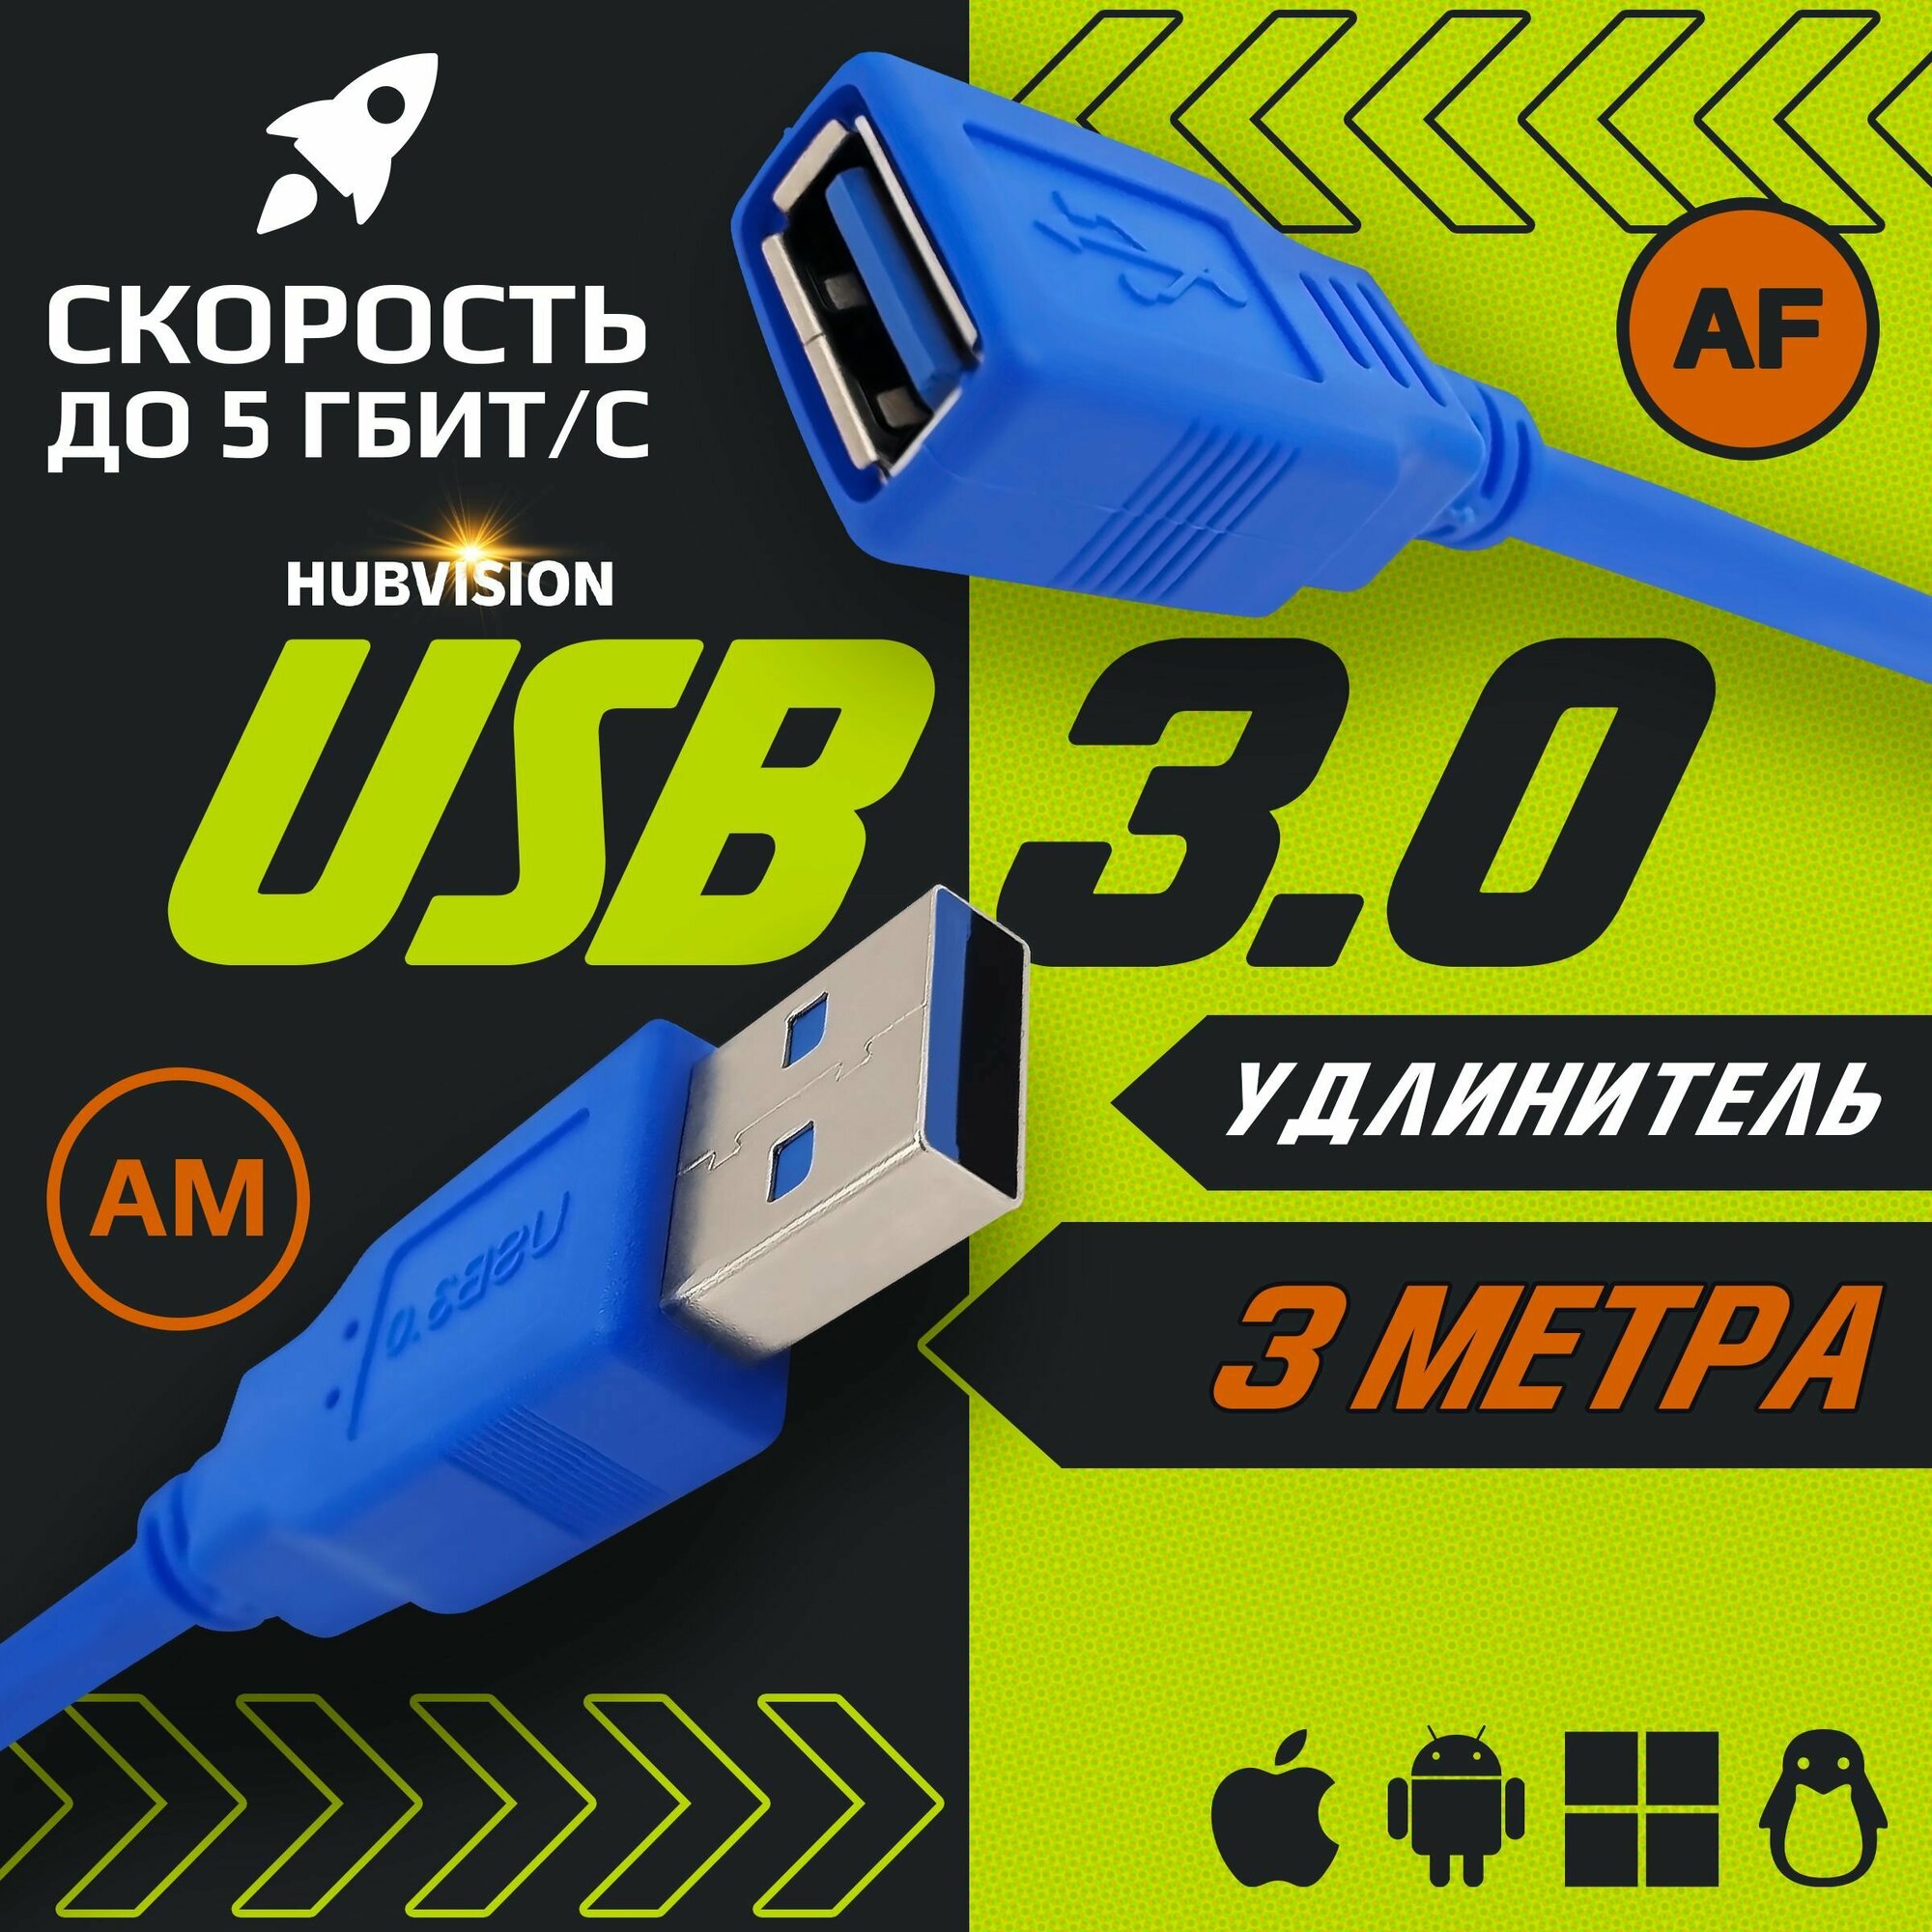 Удлинитель USB 3.0 / кабель / провод (AM-AF / папа-мама) 3 метра